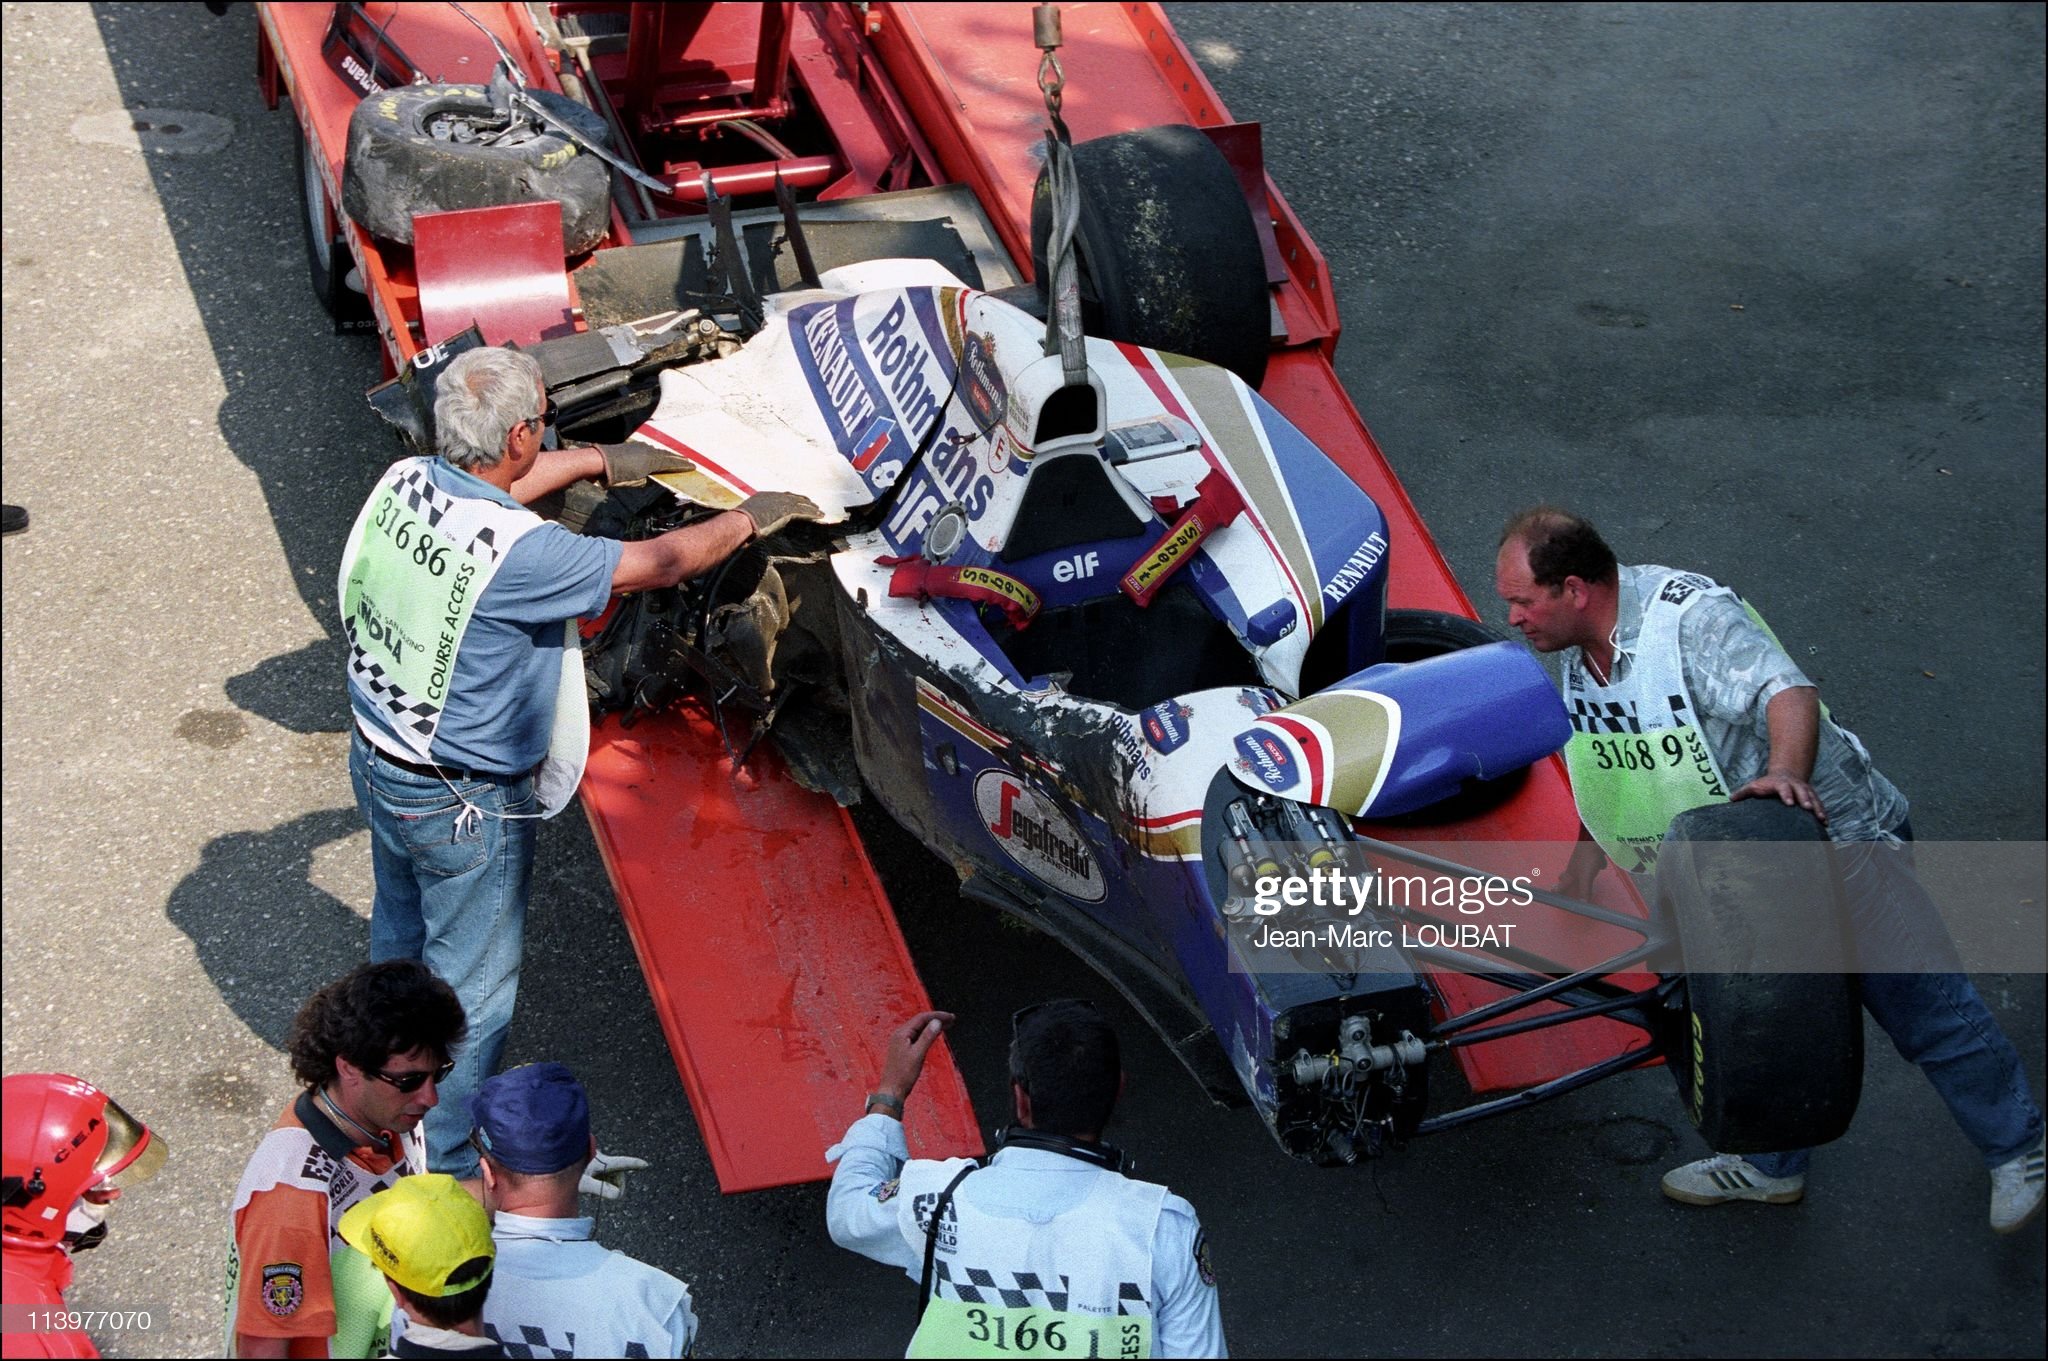 The car of Senna after the crash. 